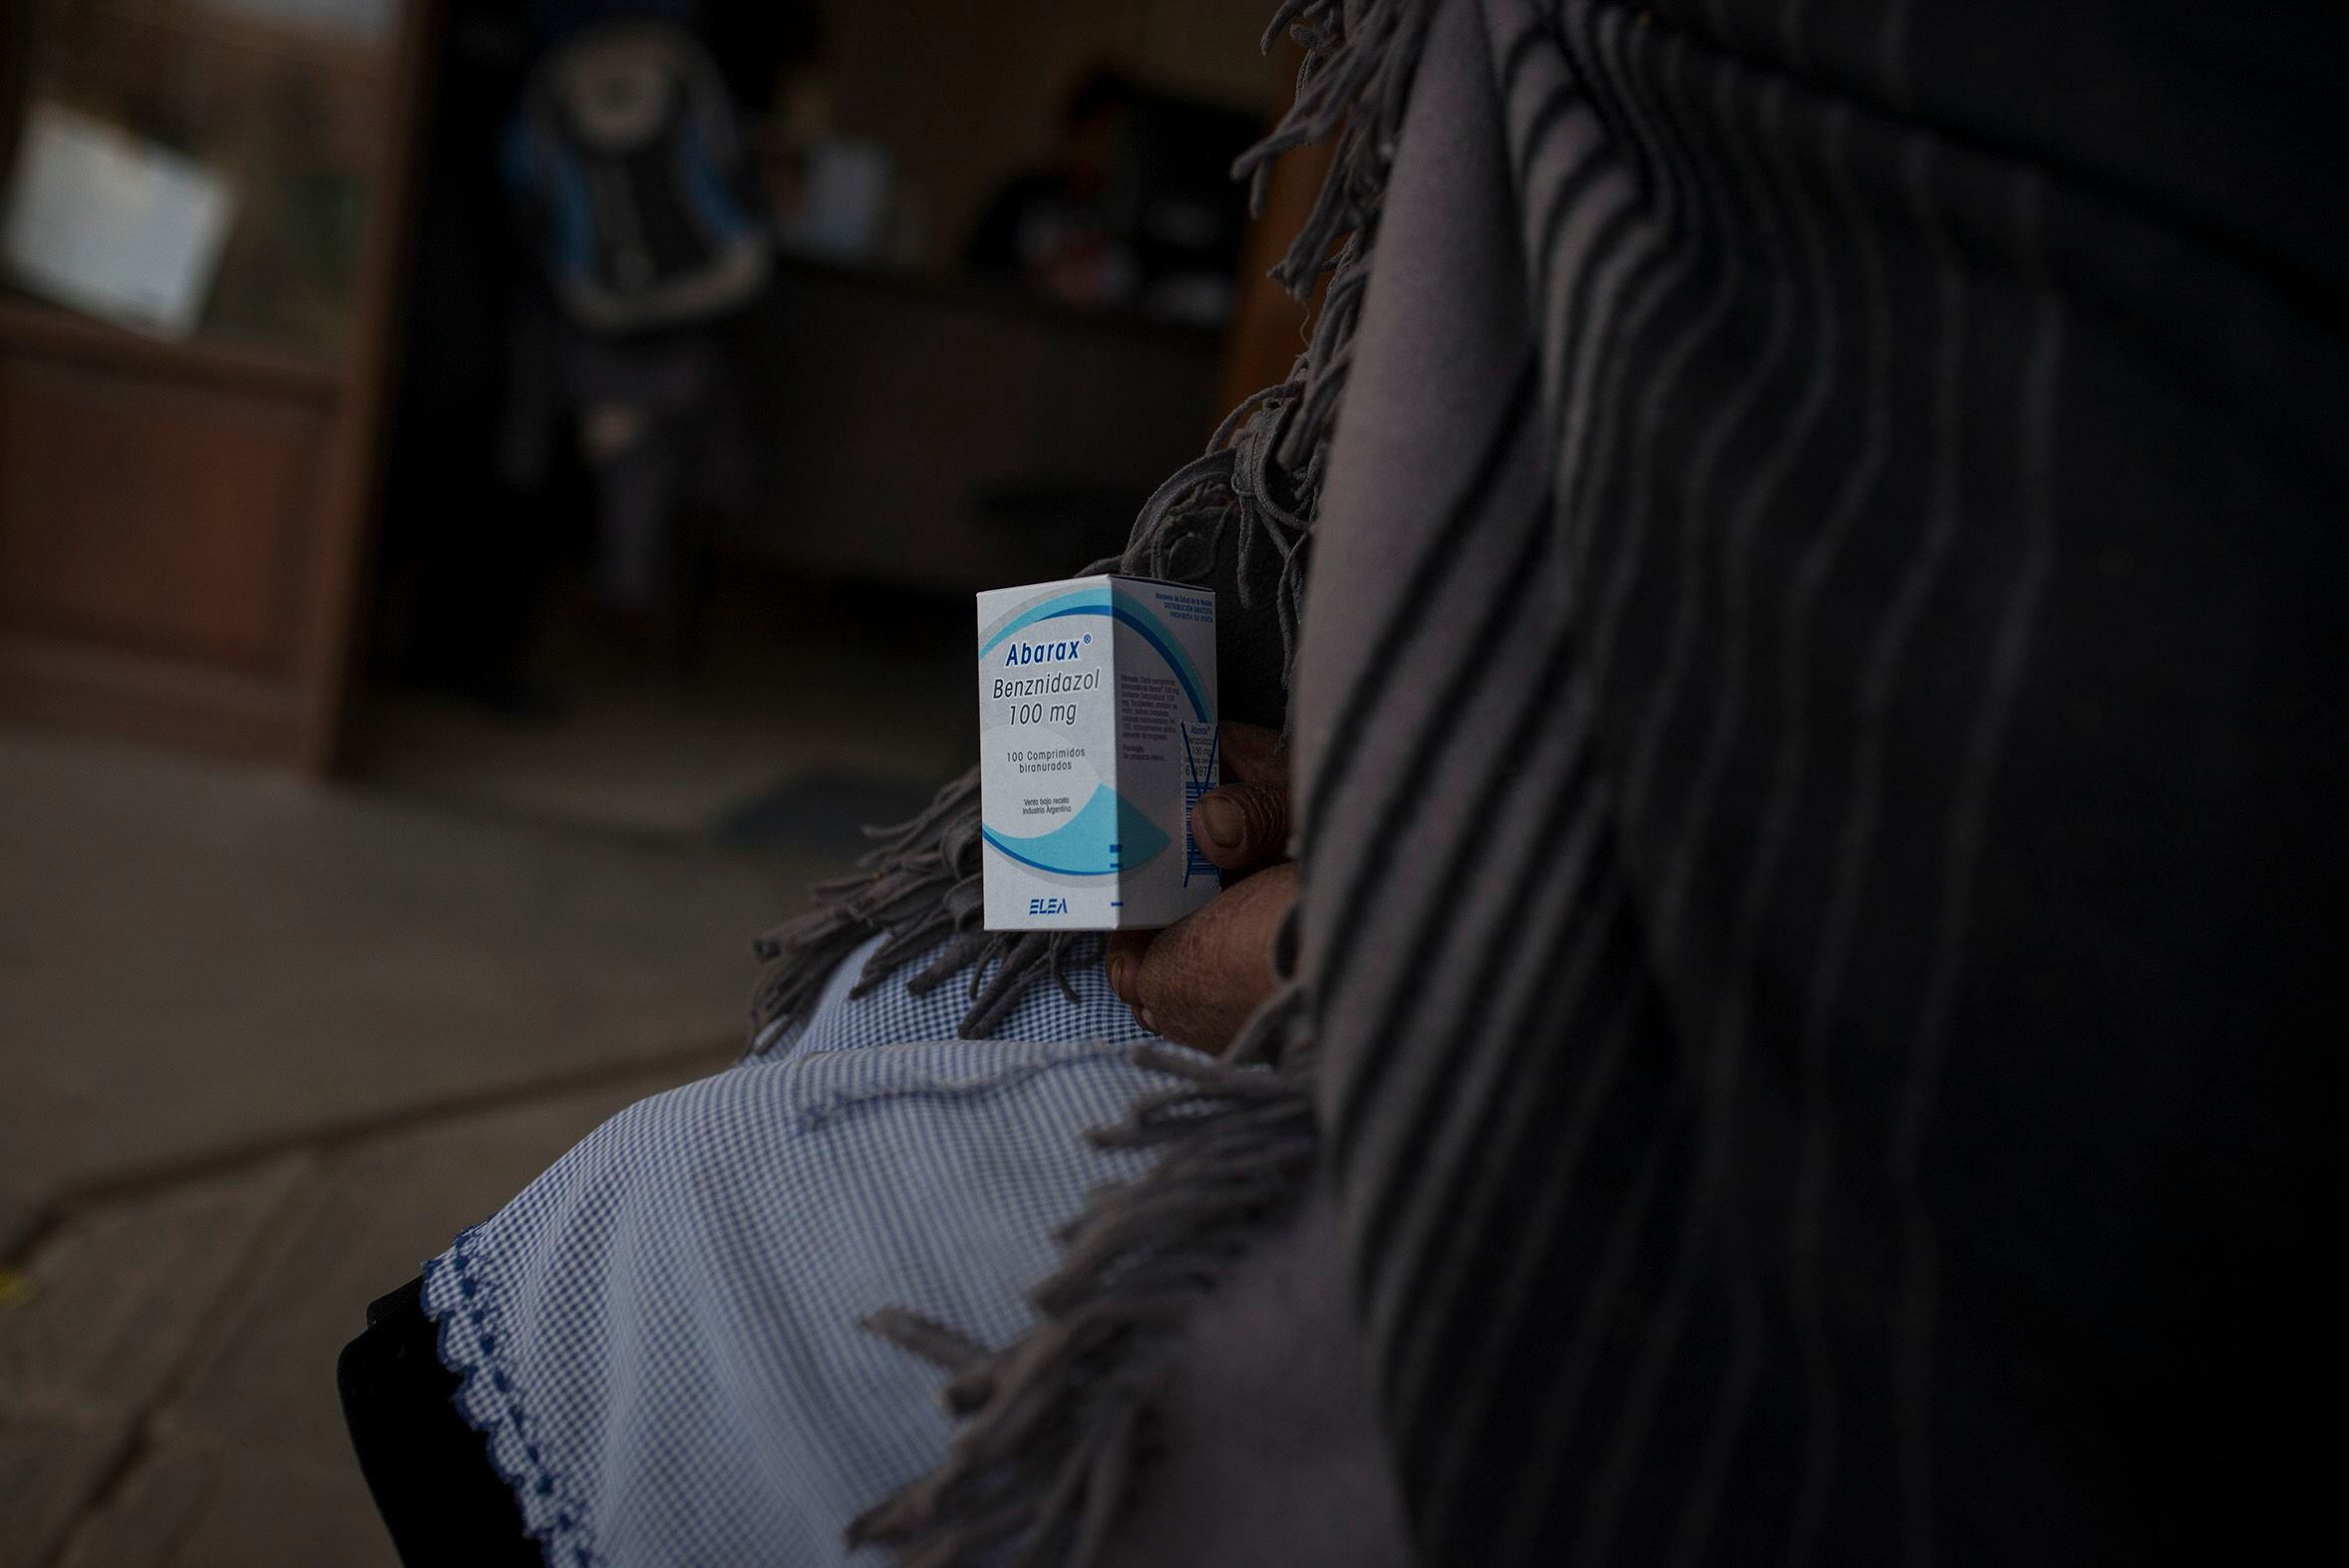 Una mujer sostiene una caja de Benznidazol, el medicamento que se emplea para tratar el chagas, tras una consulta médica en Cochabamba, Bolivia en 2016.